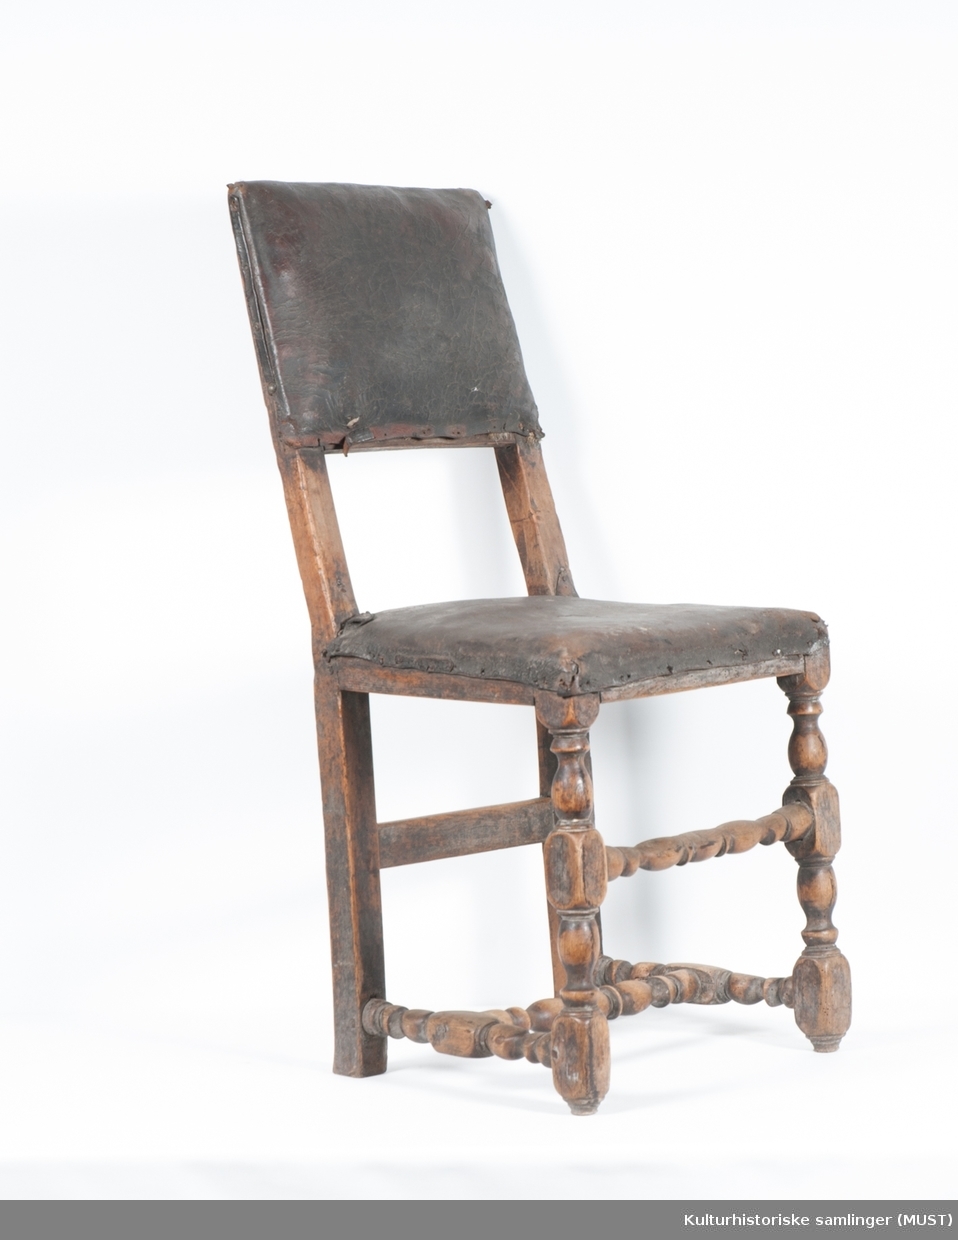 Fast sete. Setet og rygg er trukket med svart skinn, antagelig originalt. Stolen har dreide forbein og sprosser.